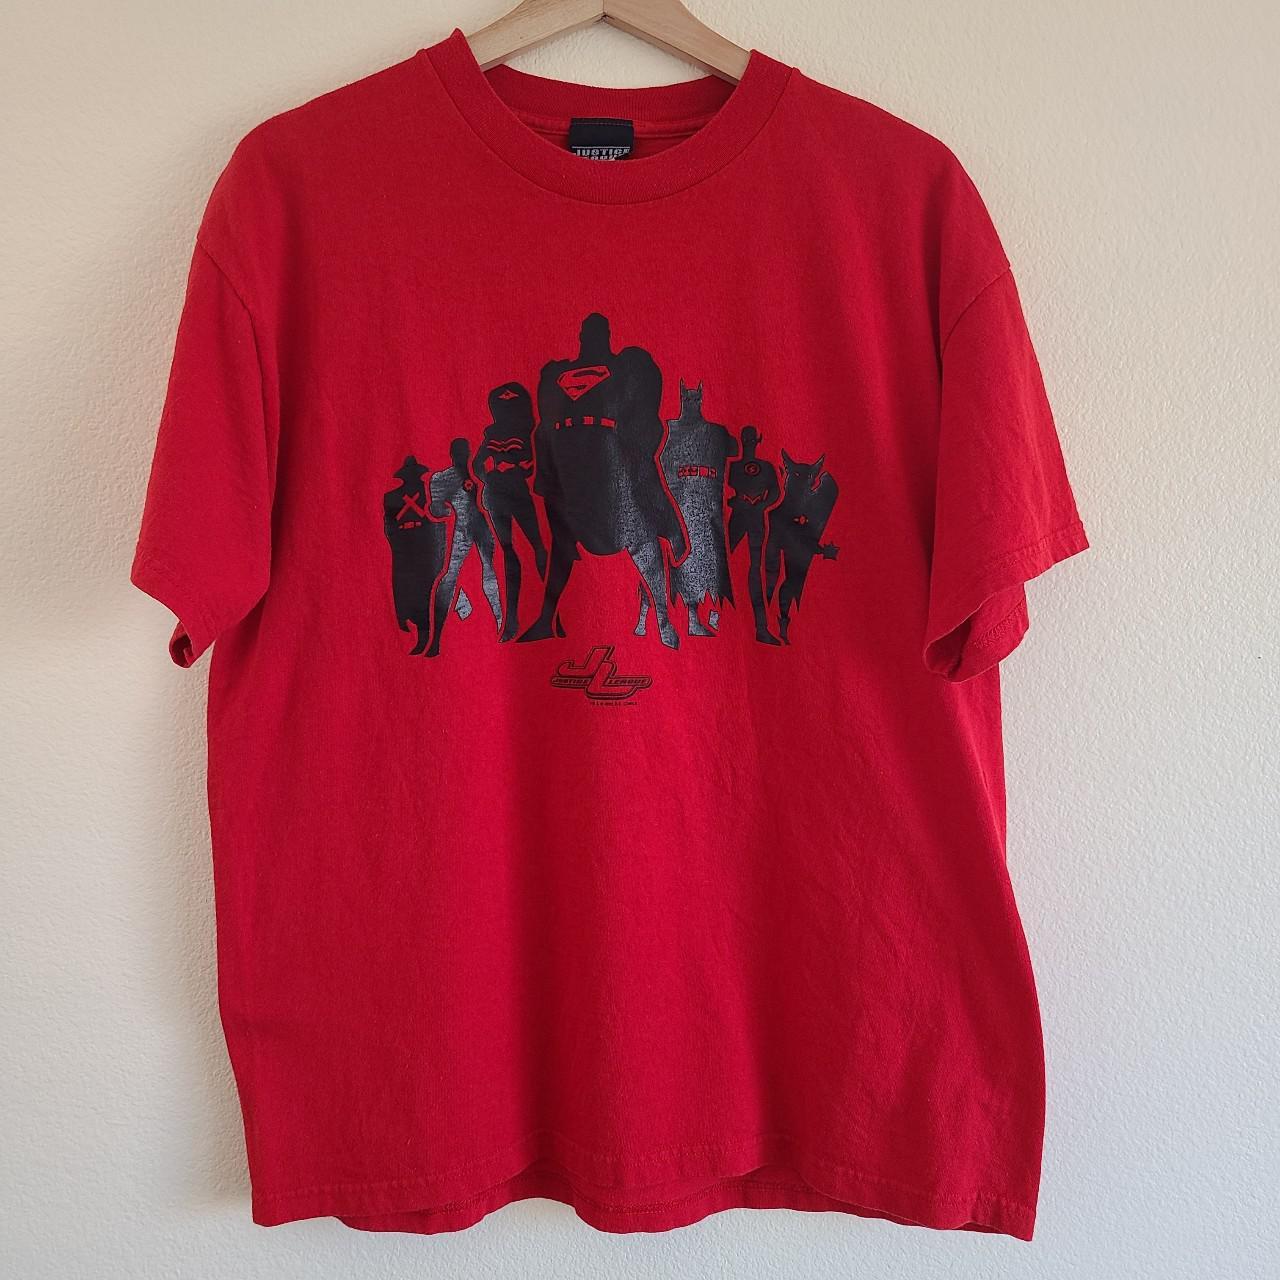 Product Image 2 - Vintage Justice League t-shirt size